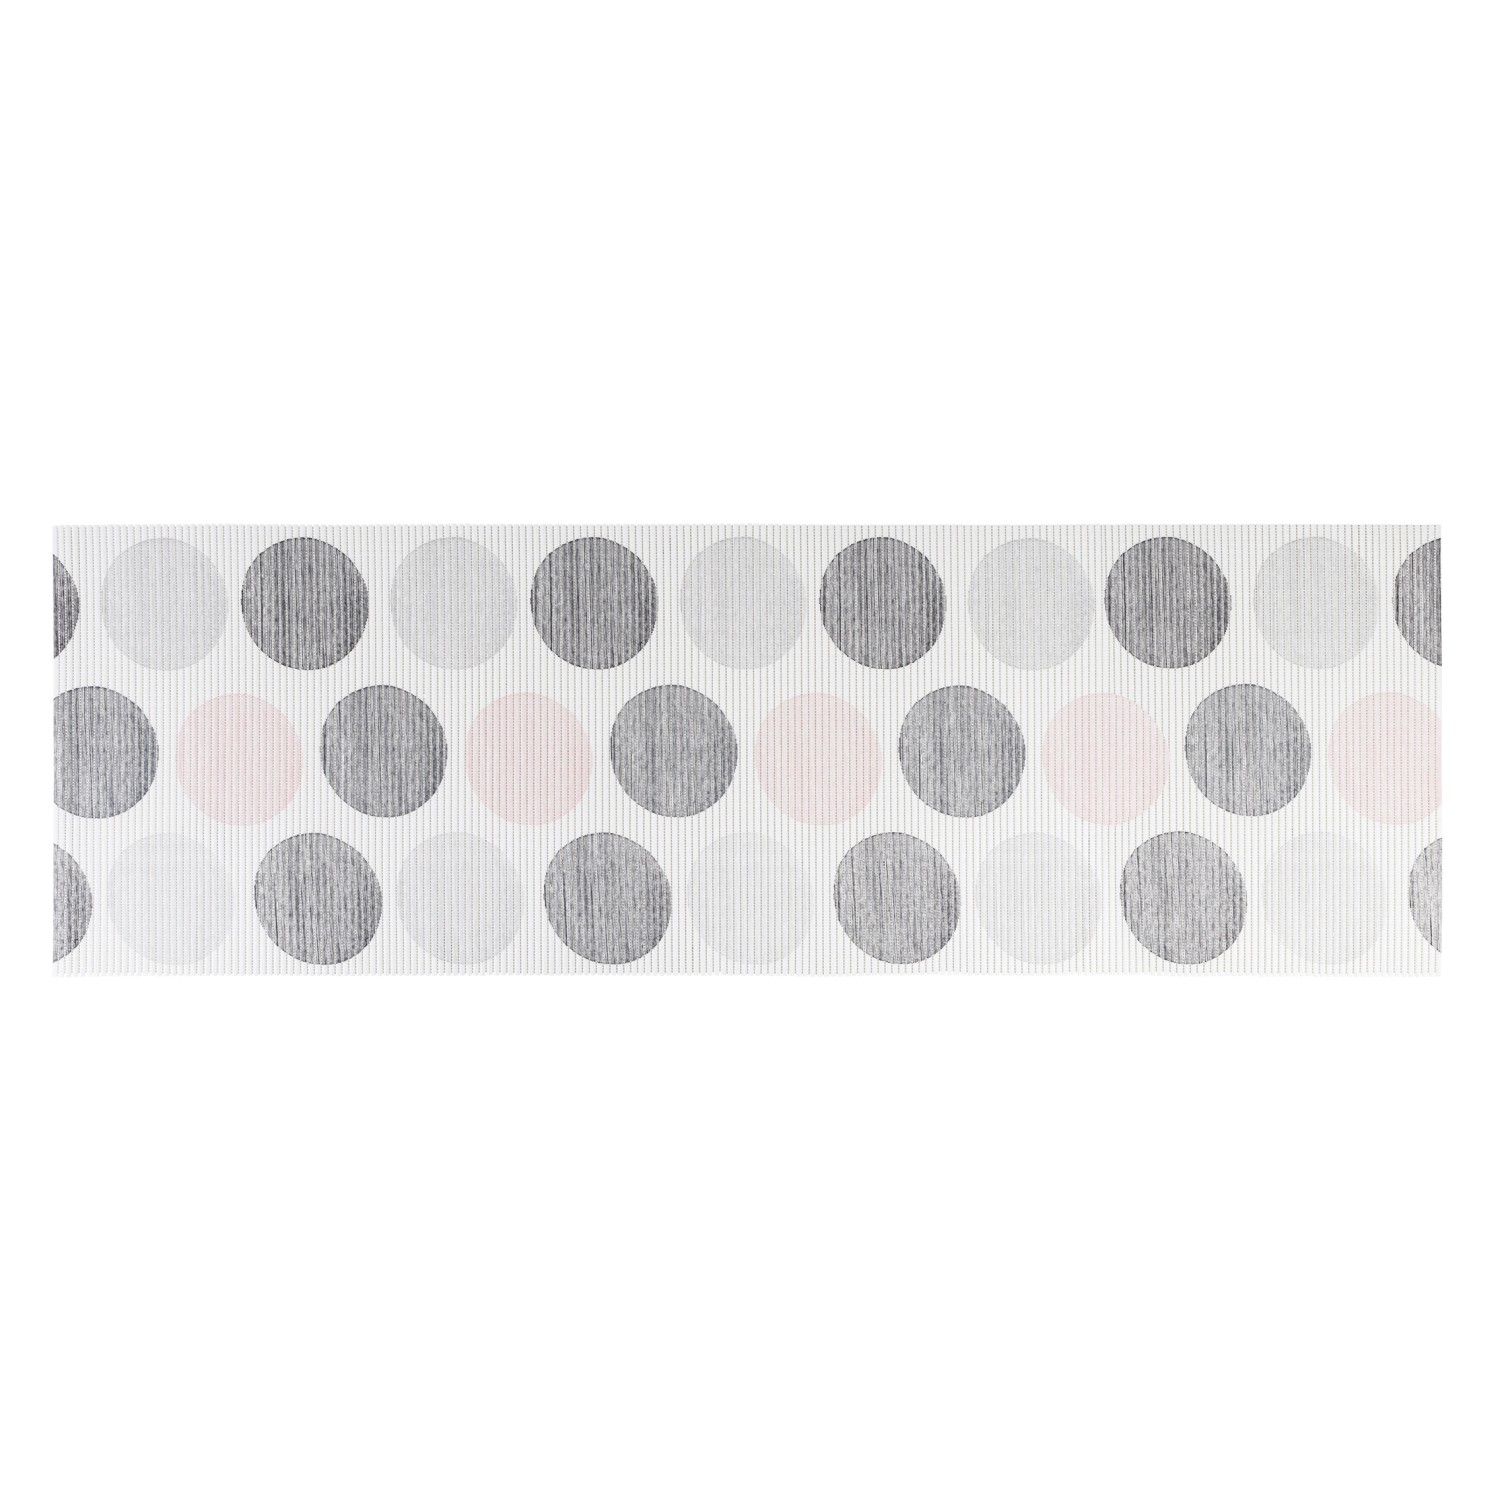 Wenko Badematte Pastell Dots 65 cm x 200 cm Mehrfarbig